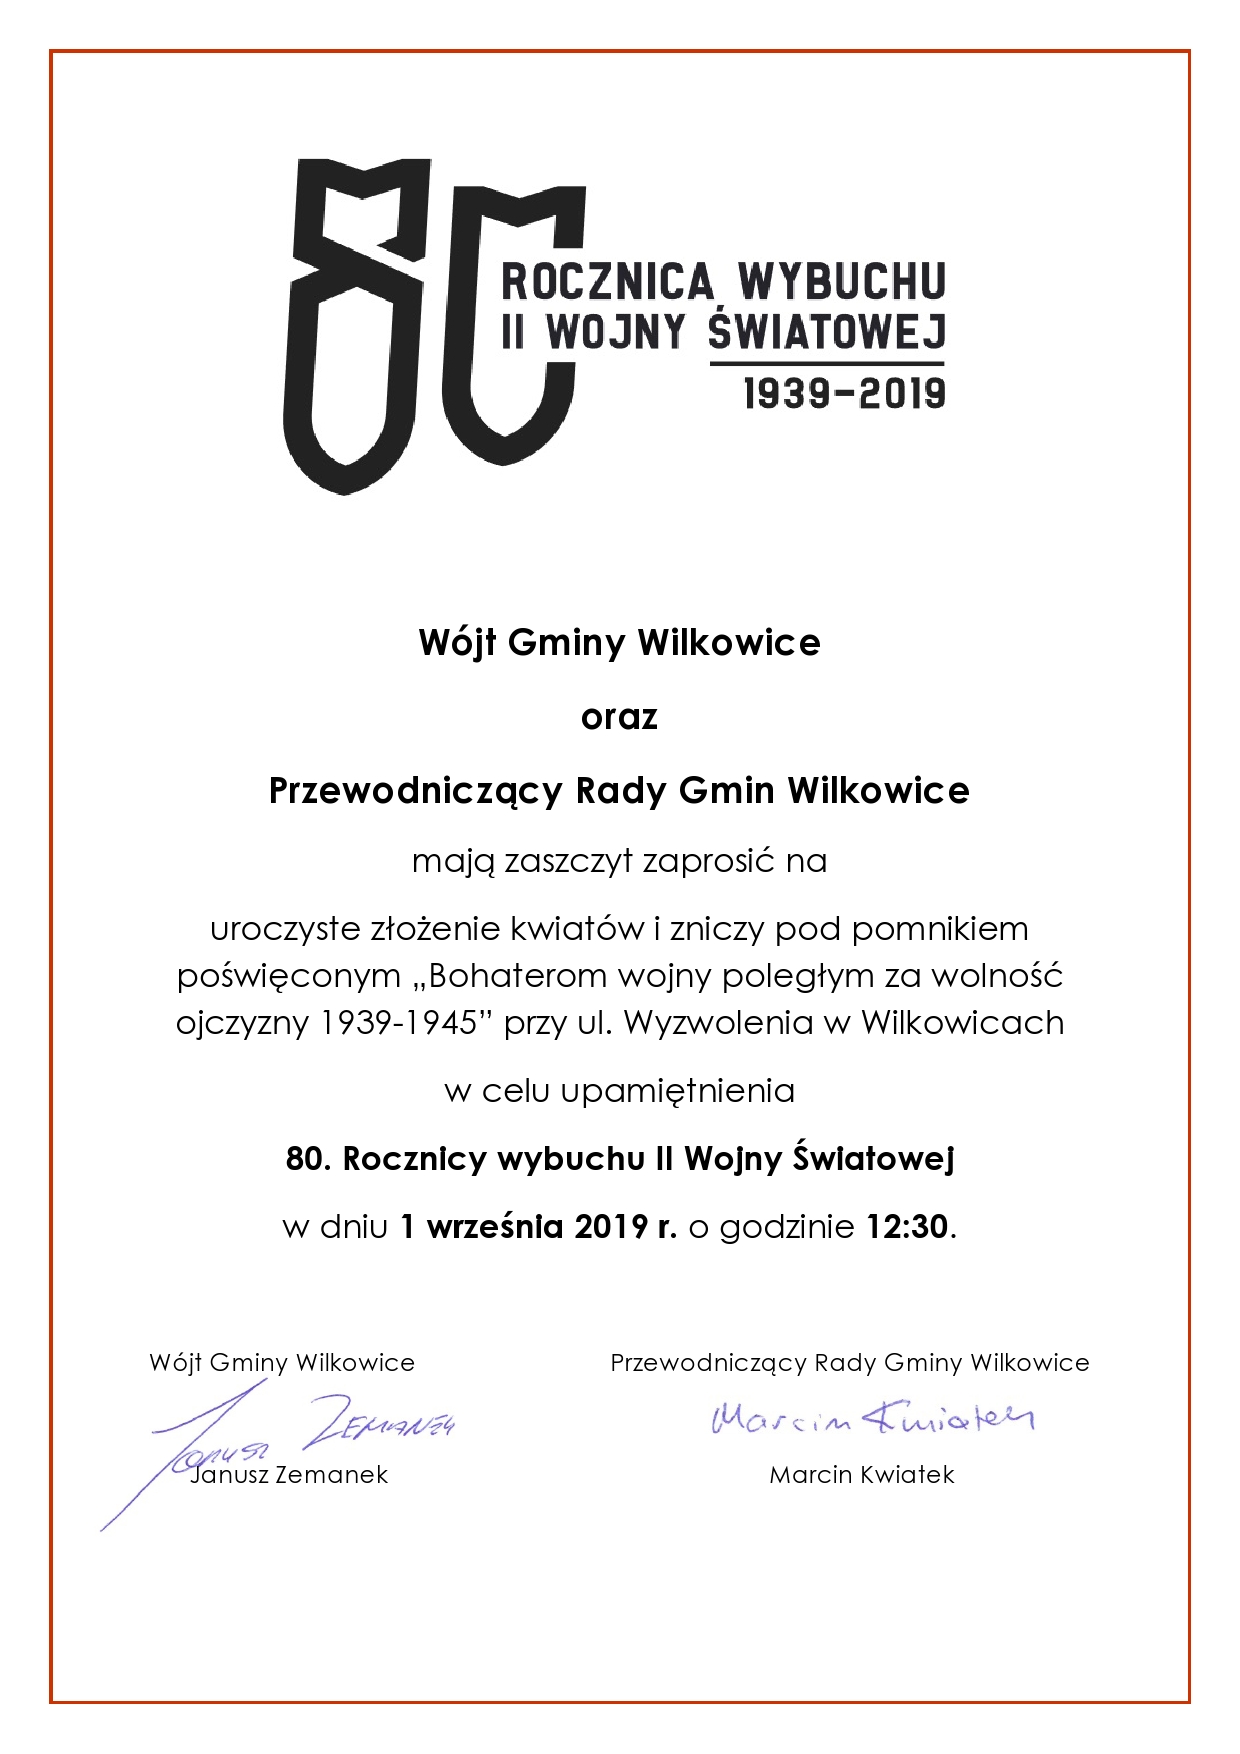 W jt gminy wilkowice page0001